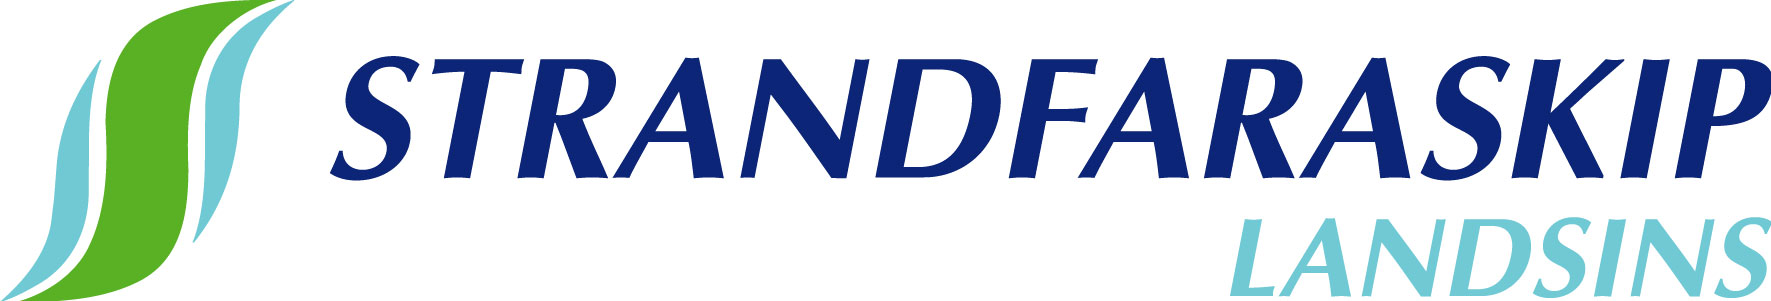 Strandfaraskip Landsins logo